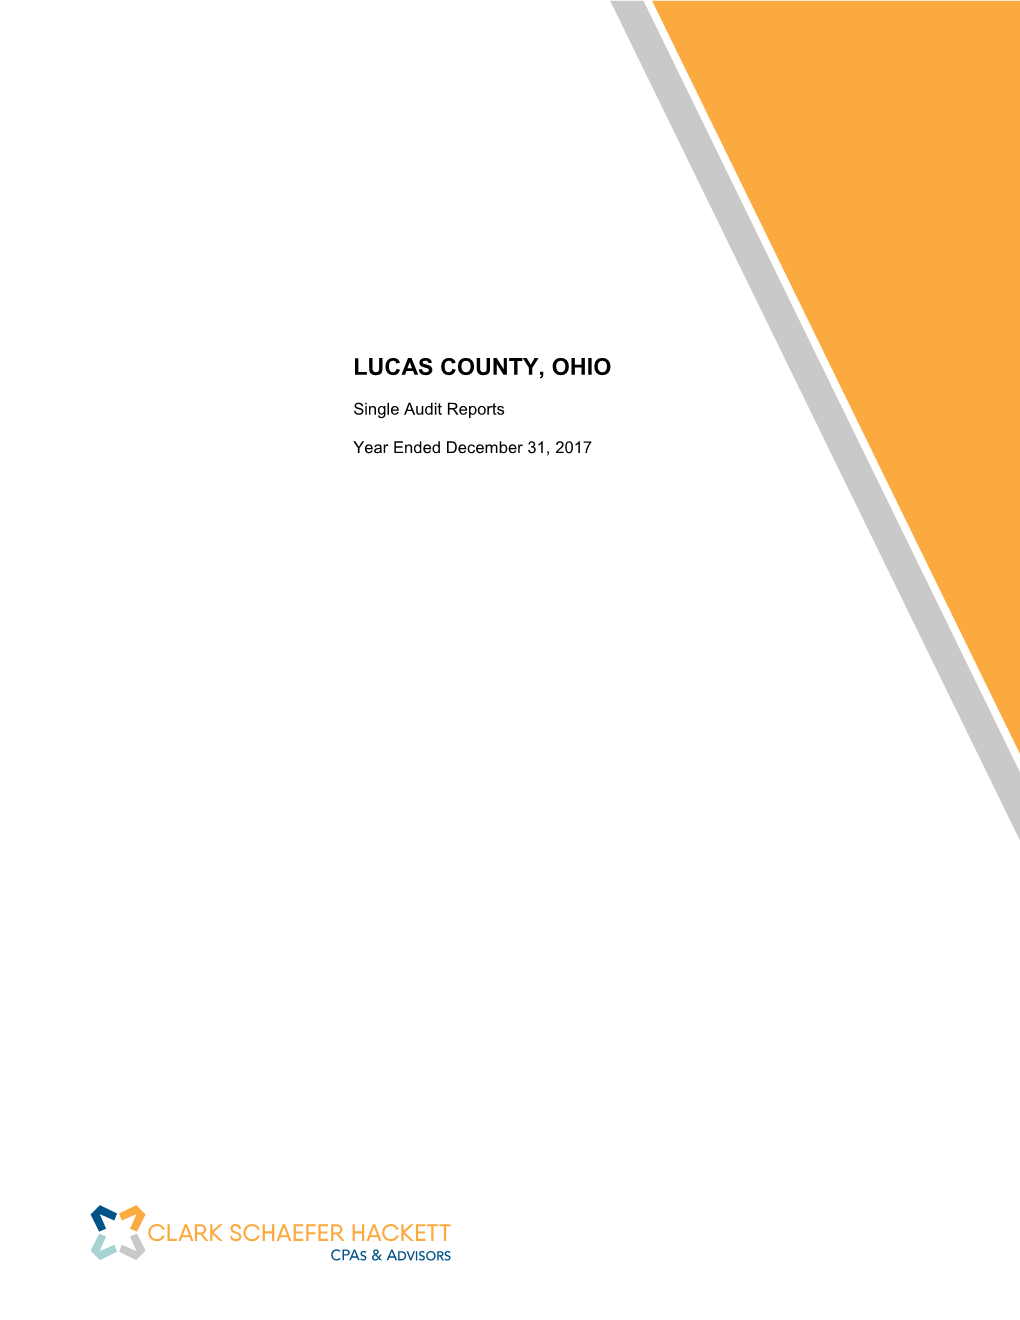 Lucas County, Ohio